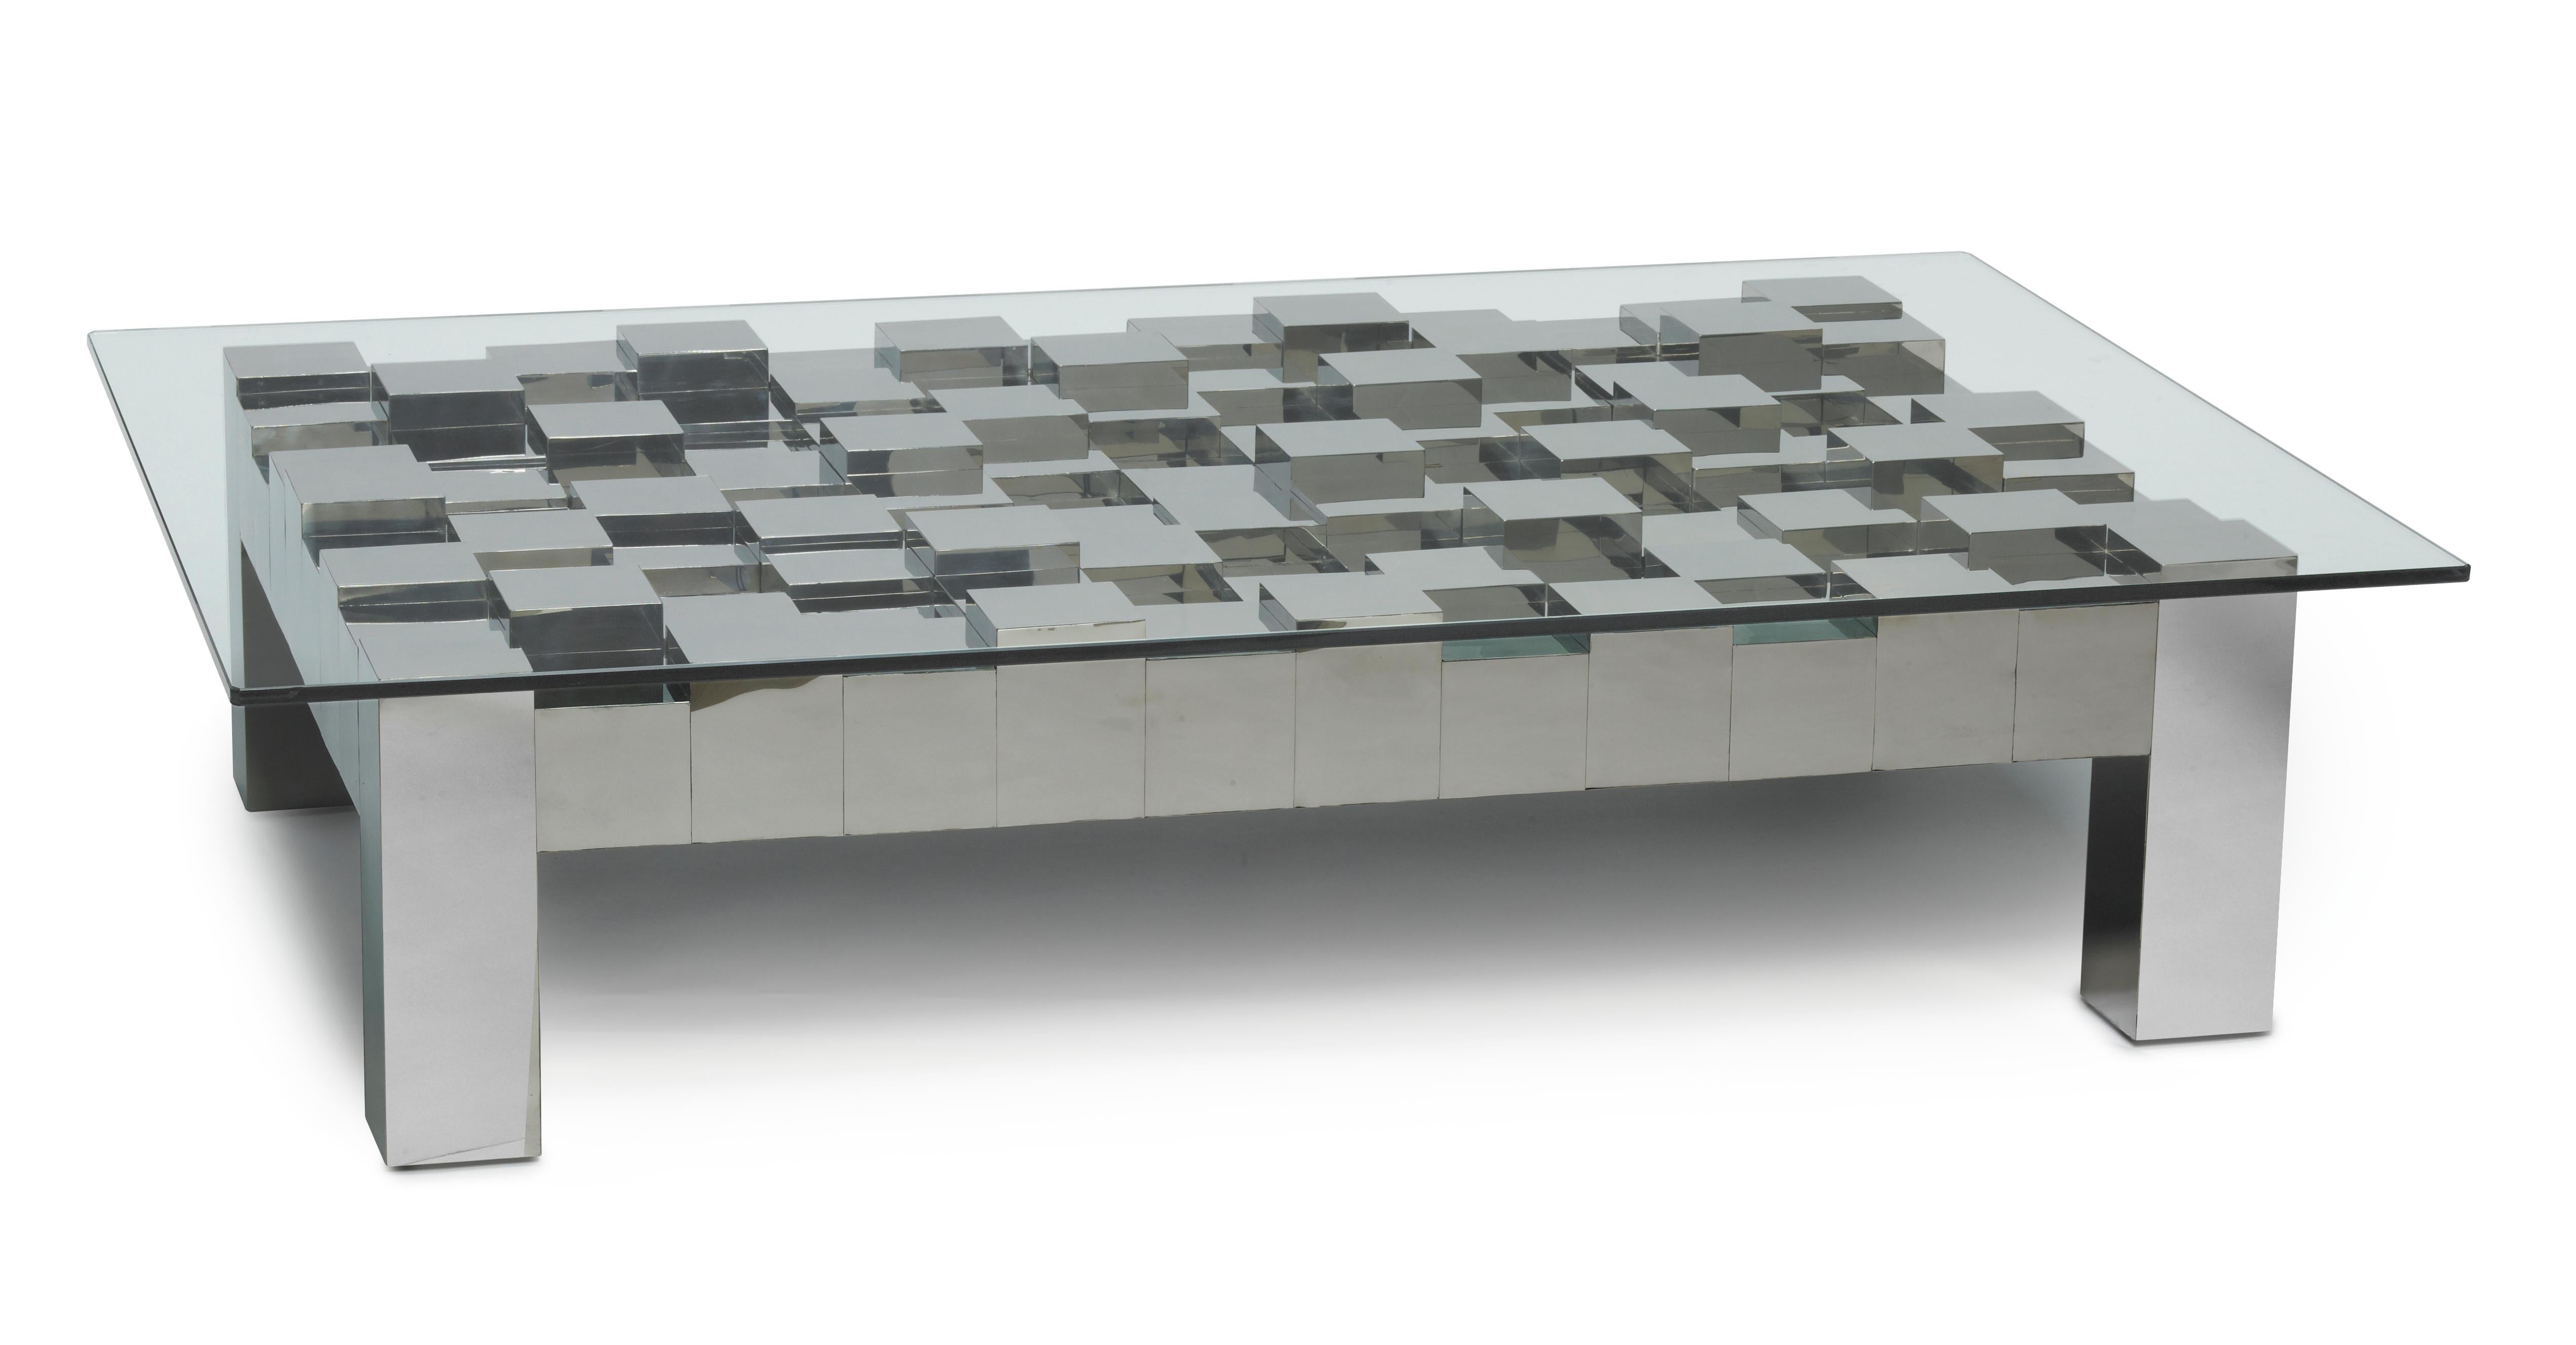 Dans un espace contemporain, une table unique en son genre émerge, construite à partir de blocs d'acier inoxydable empilés. Ce design innovant met en valeur une disposition frappante de blocs d'acier inoxydable, créant une esthétique distinctive et